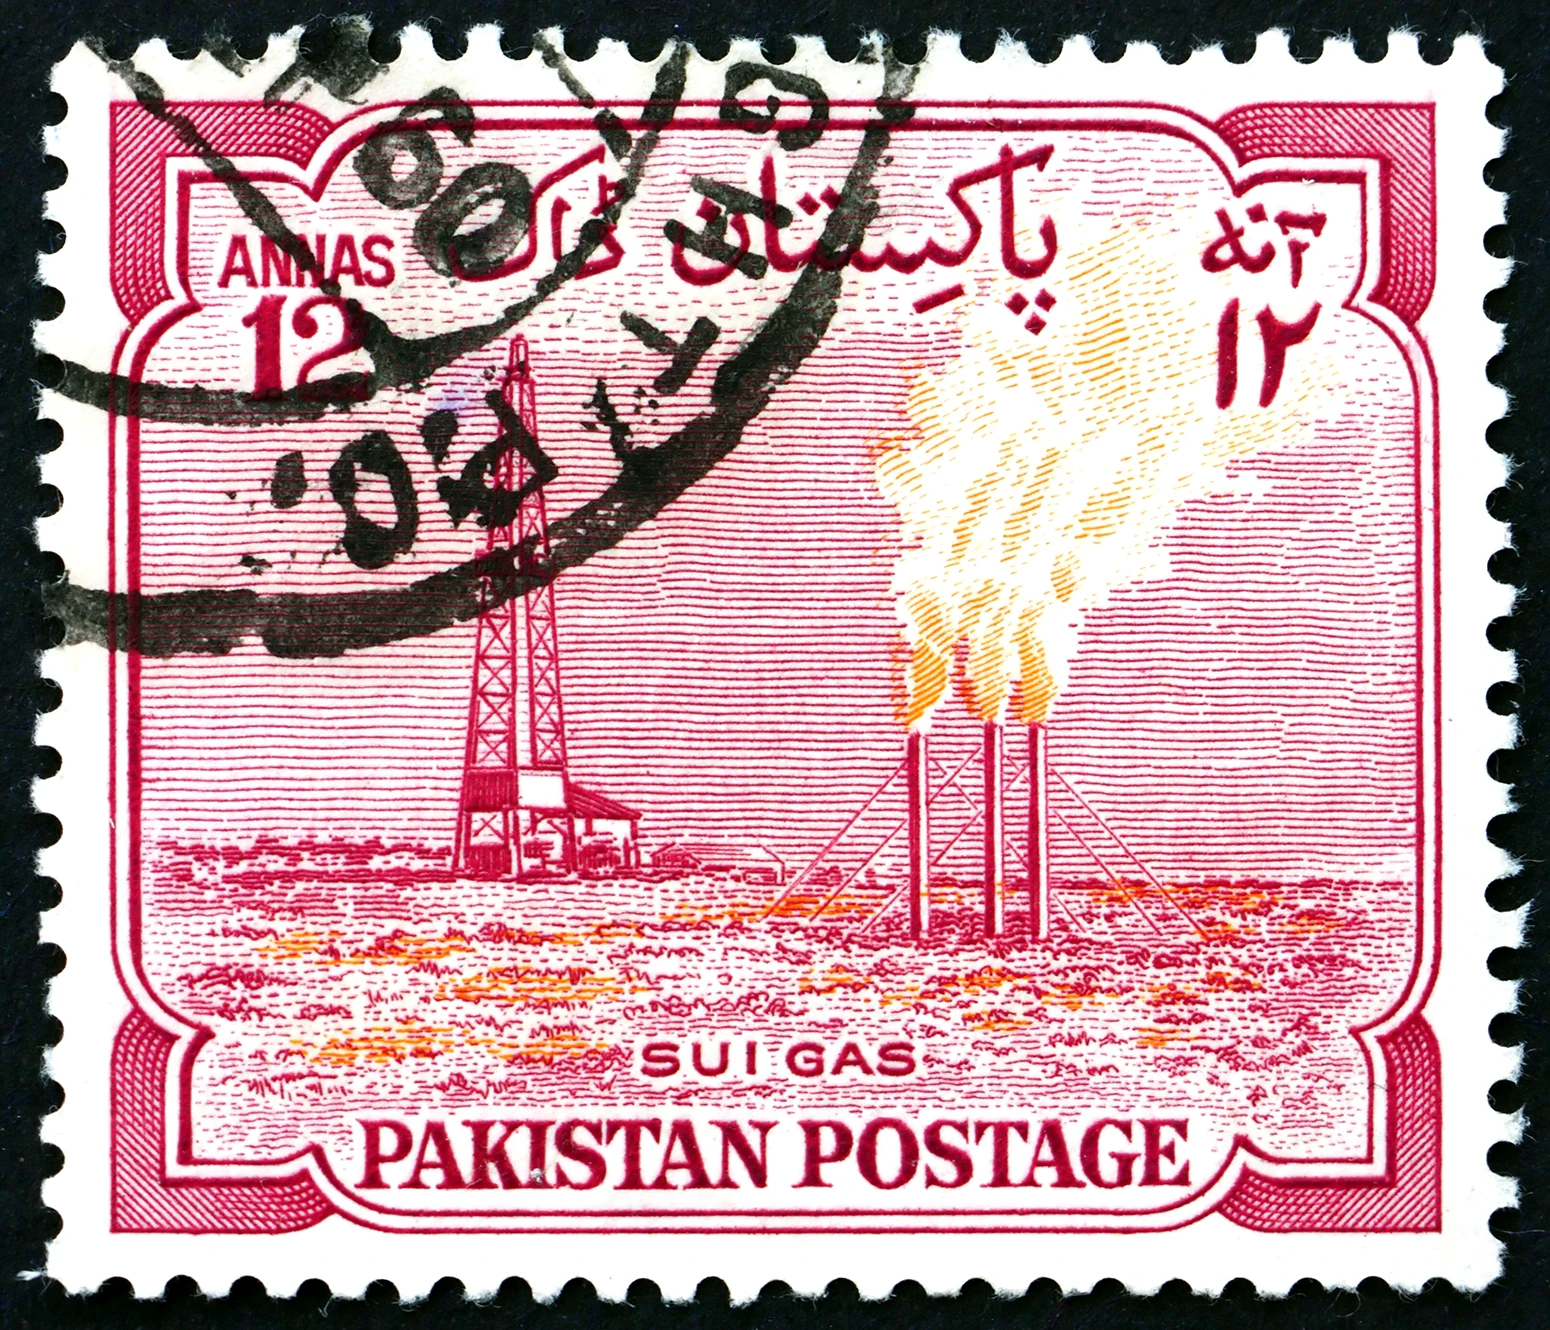 Een Pakistaanse postzegel met daarop de Sui-gasfabriek, circa 1955.